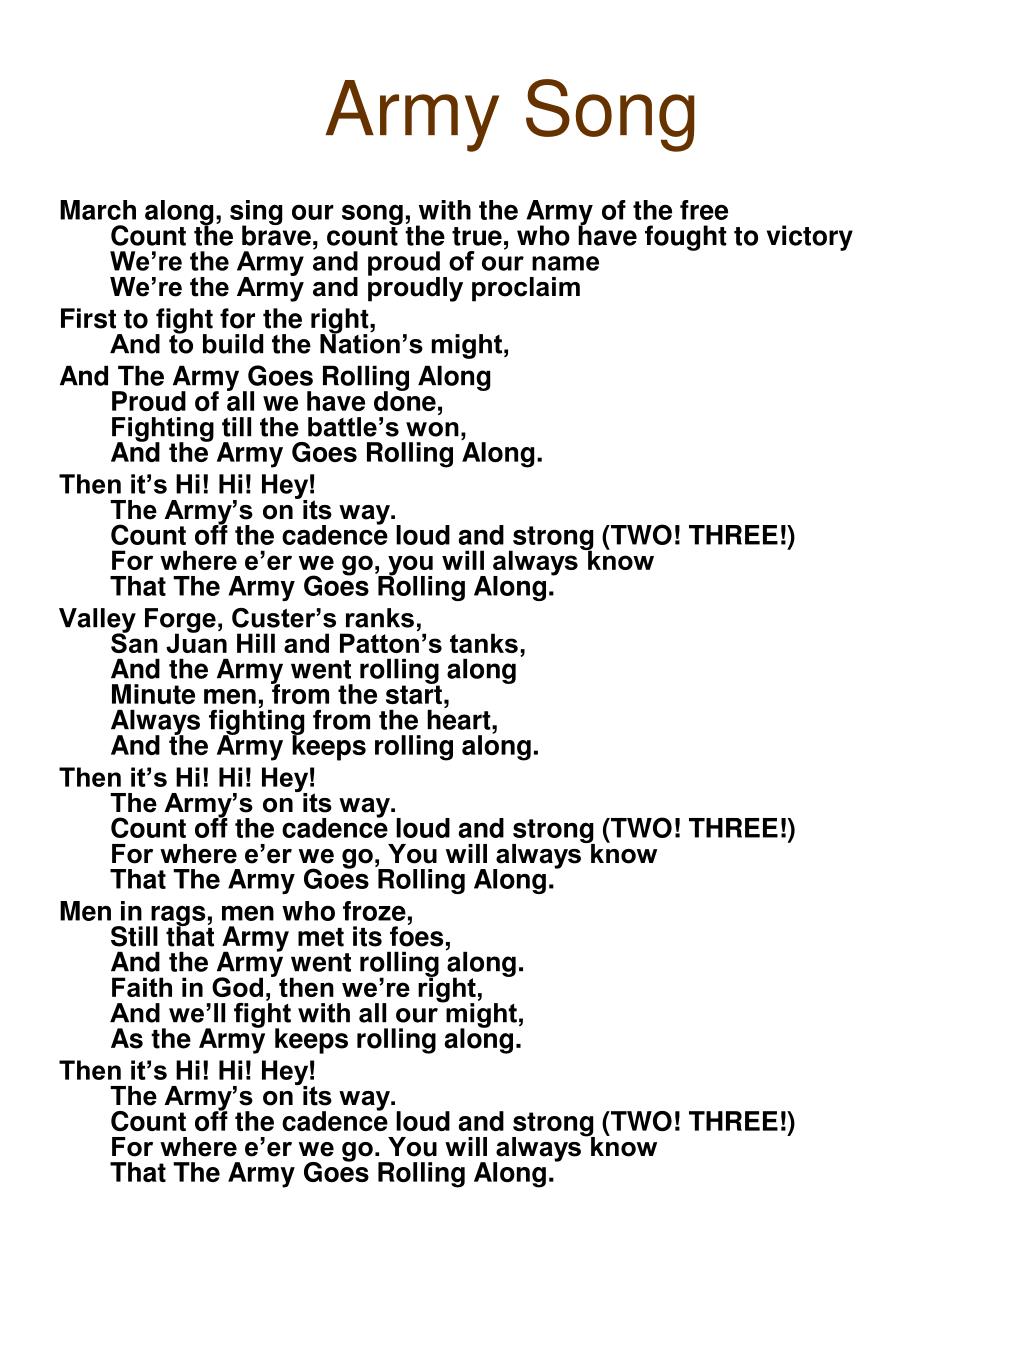 Army Song Lyrics Printable - Printable Word Searches